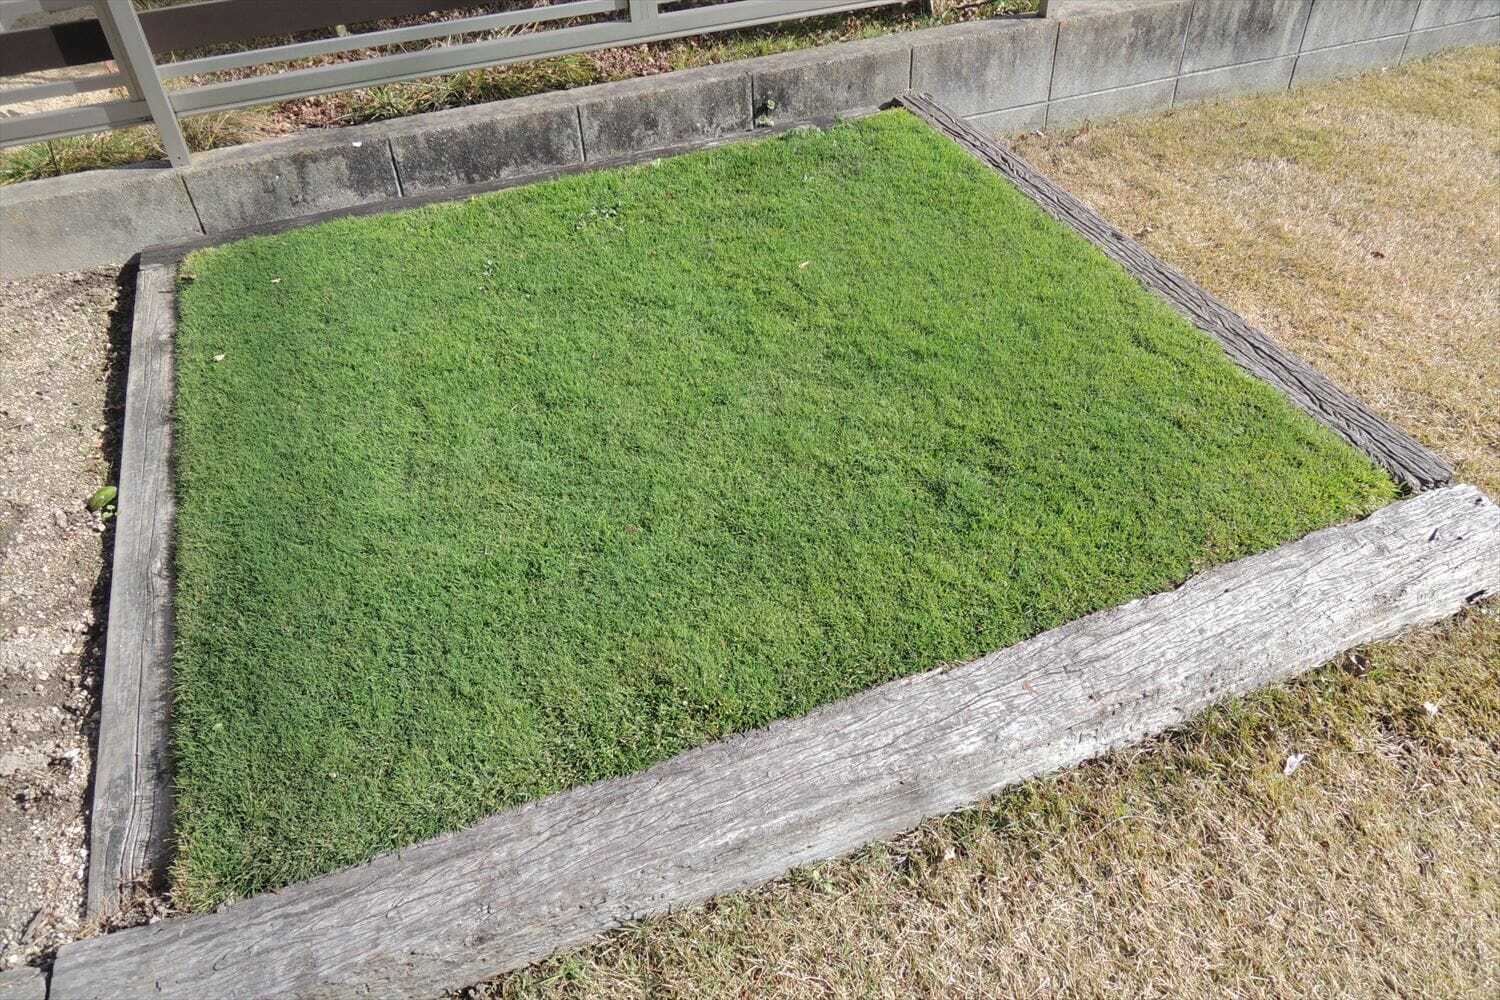 寒波に備えて芝生の耐寒性を高める 芝生のお手入れとガーデニング